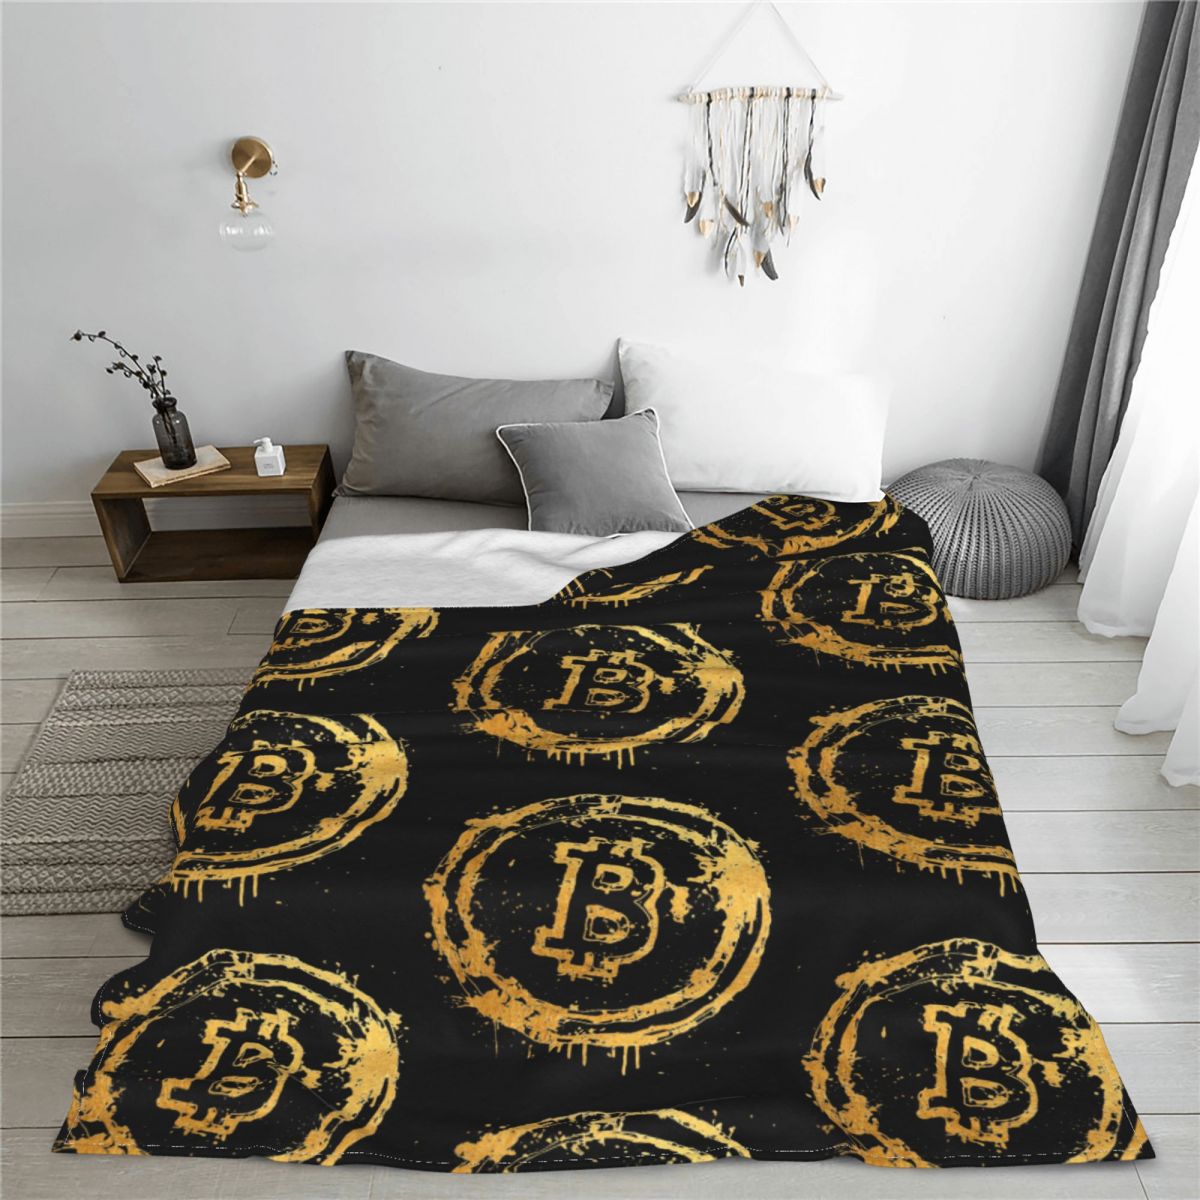 Blanket bitcoin blanket bitcoin-themed blanket